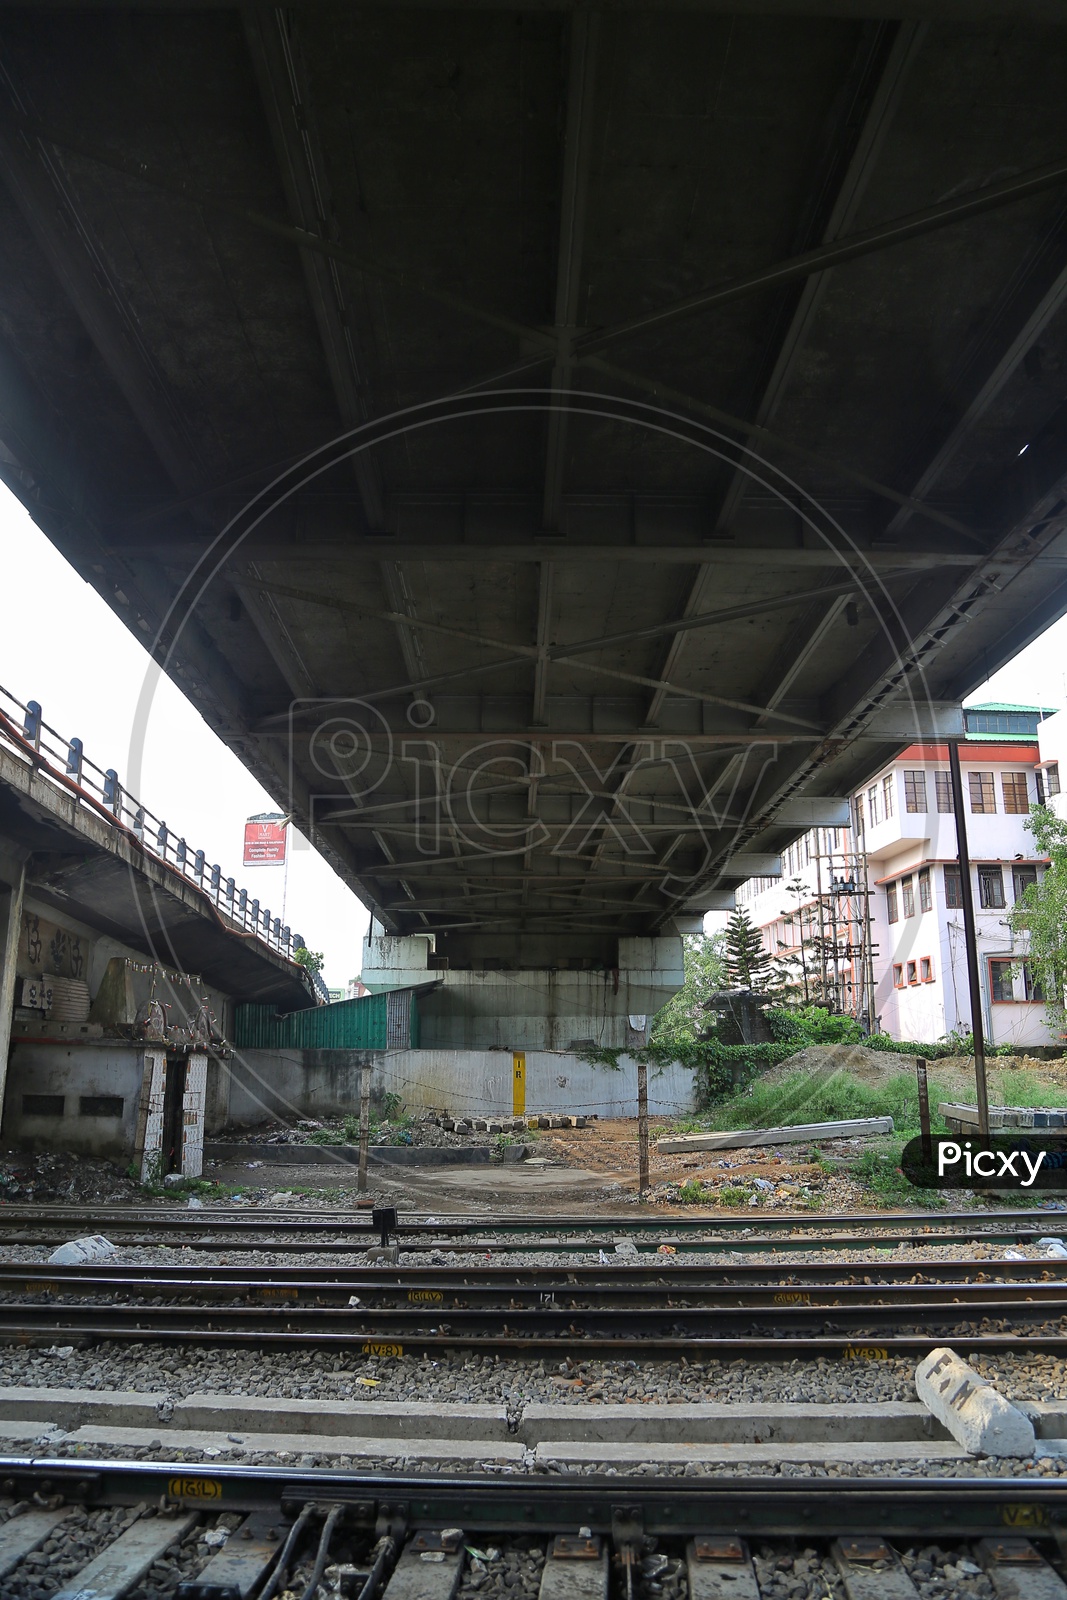 Indian railways or GUWAHATI railway or Railway tracks